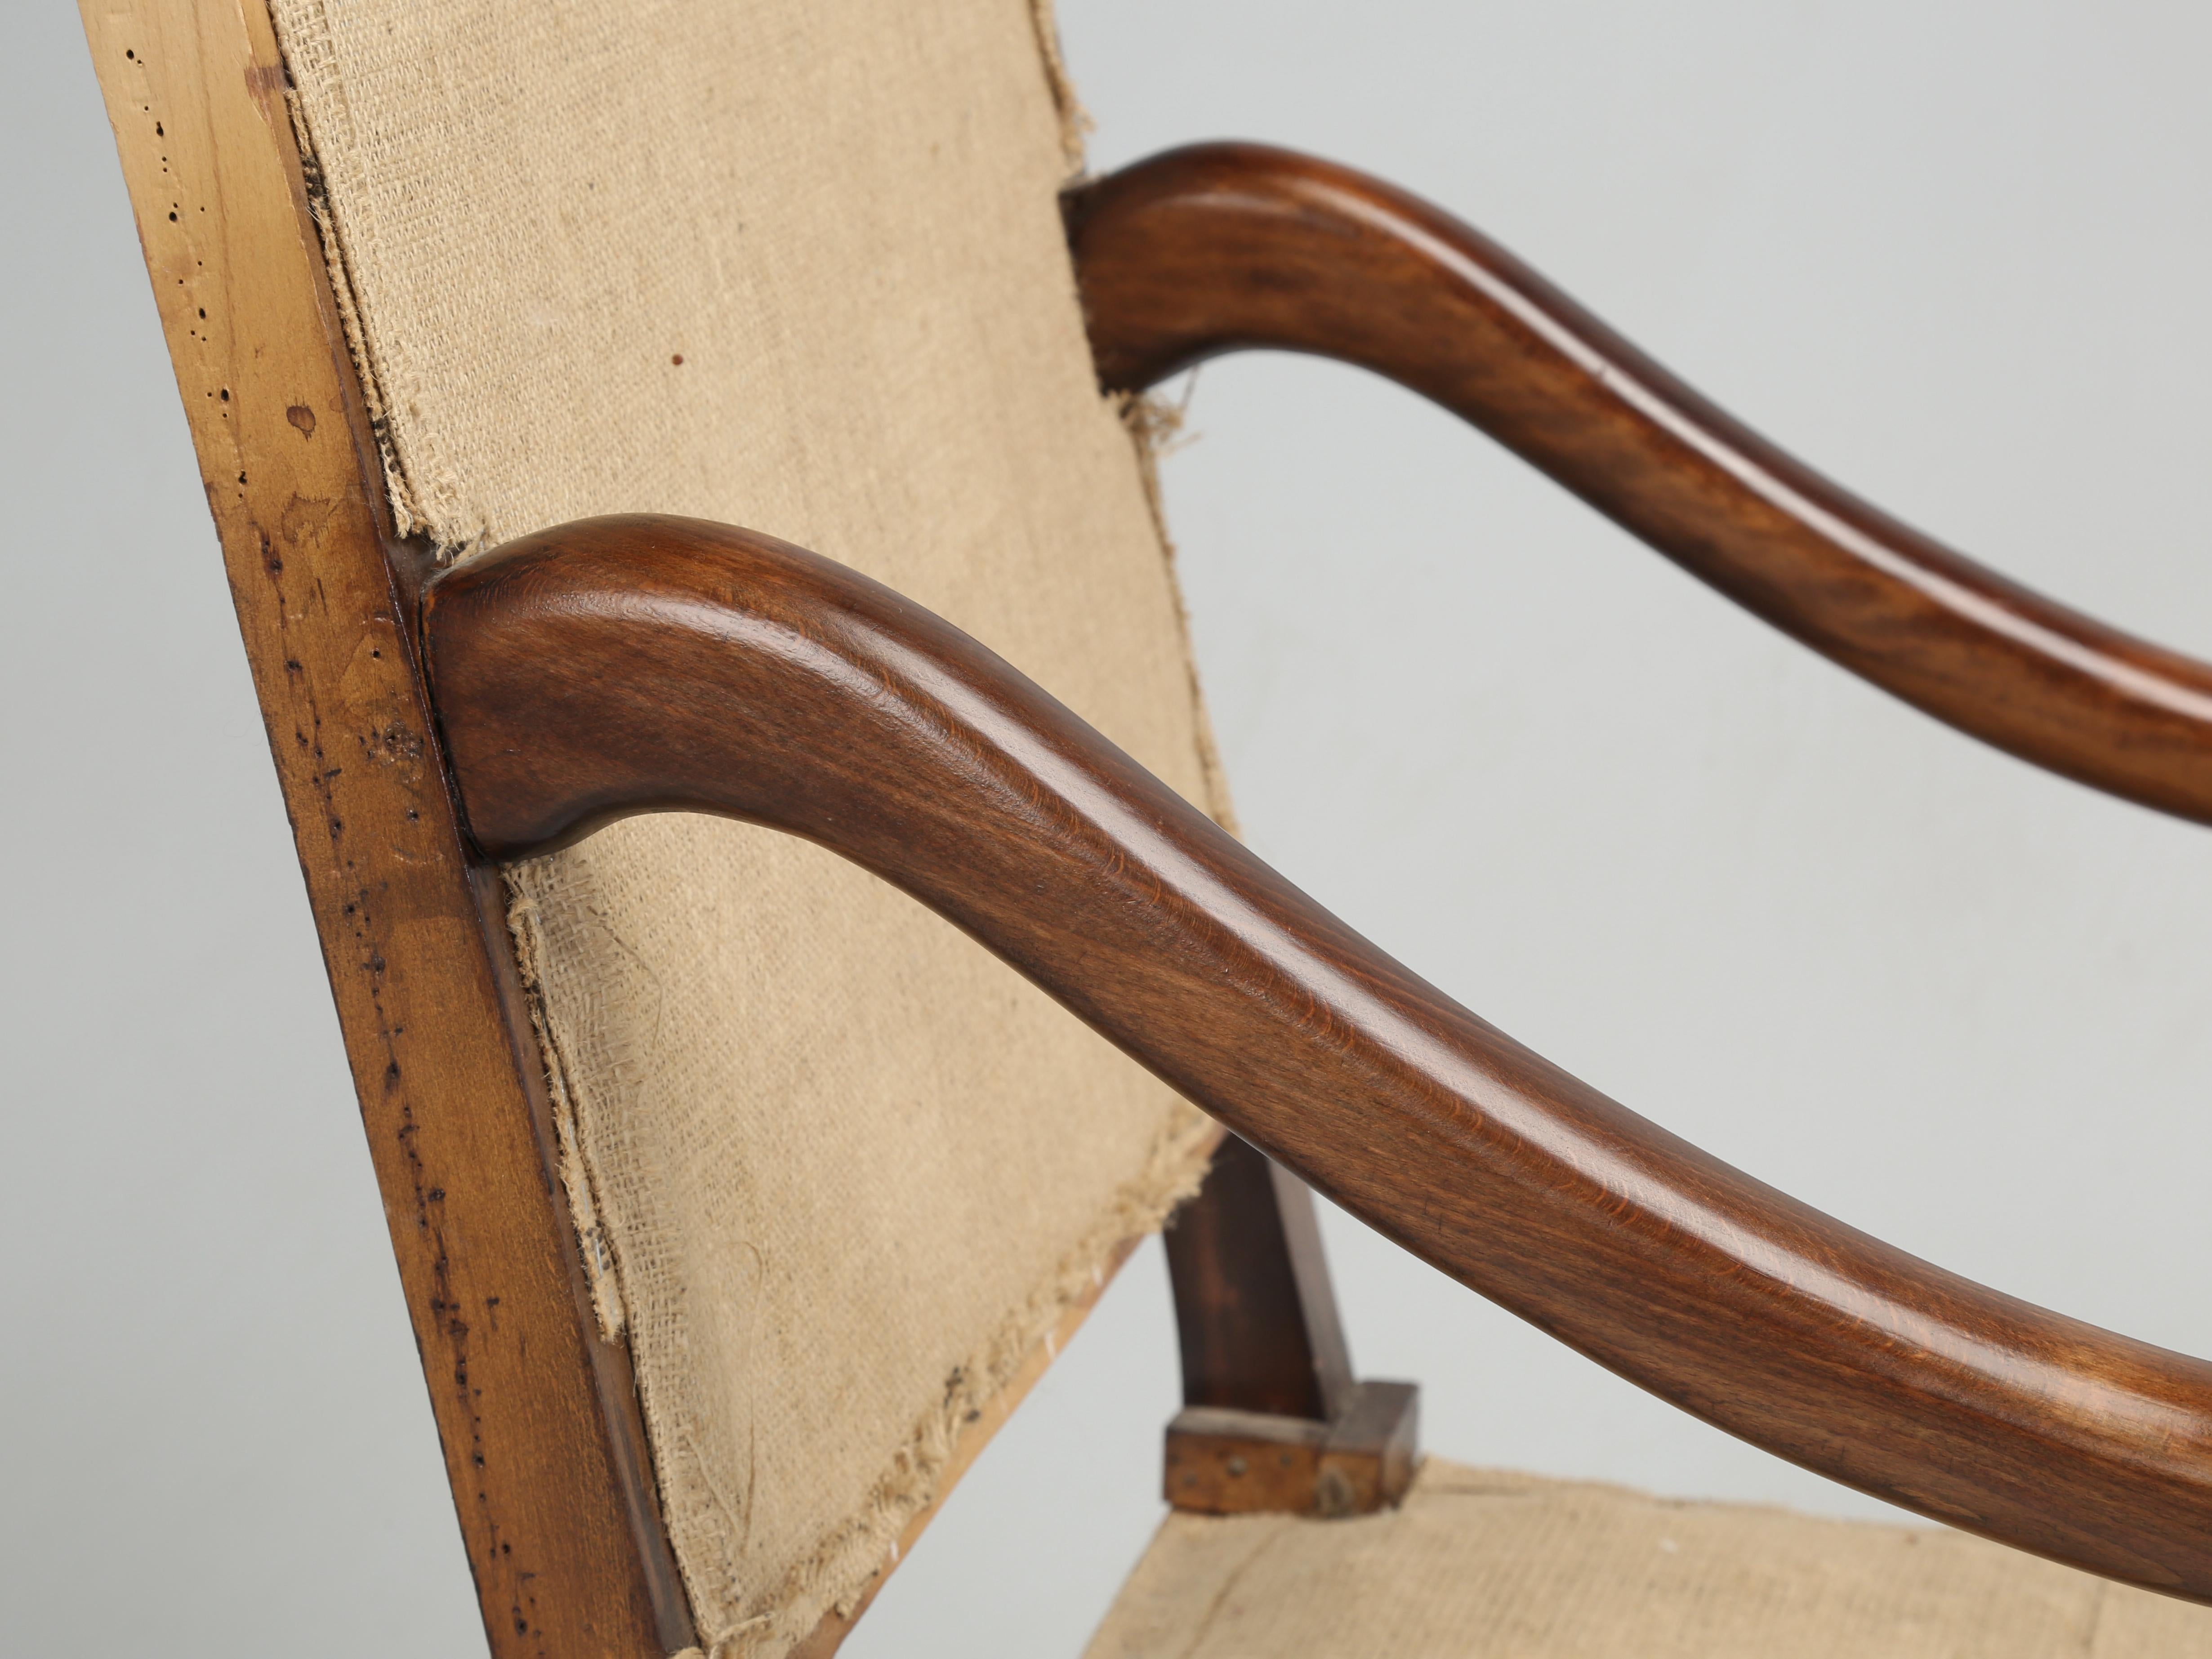 Zwei klassische französische Os de Mouton-Sessel, die alt genug sind, um mit Holzpflöcken zusammengesetzt worden zu sein. Wenn wir die hölzerne Zapfenkonstruktion sehen, deutet dies im Allgemeinen darauf hin, dass die Stühle in den frühen 1900er